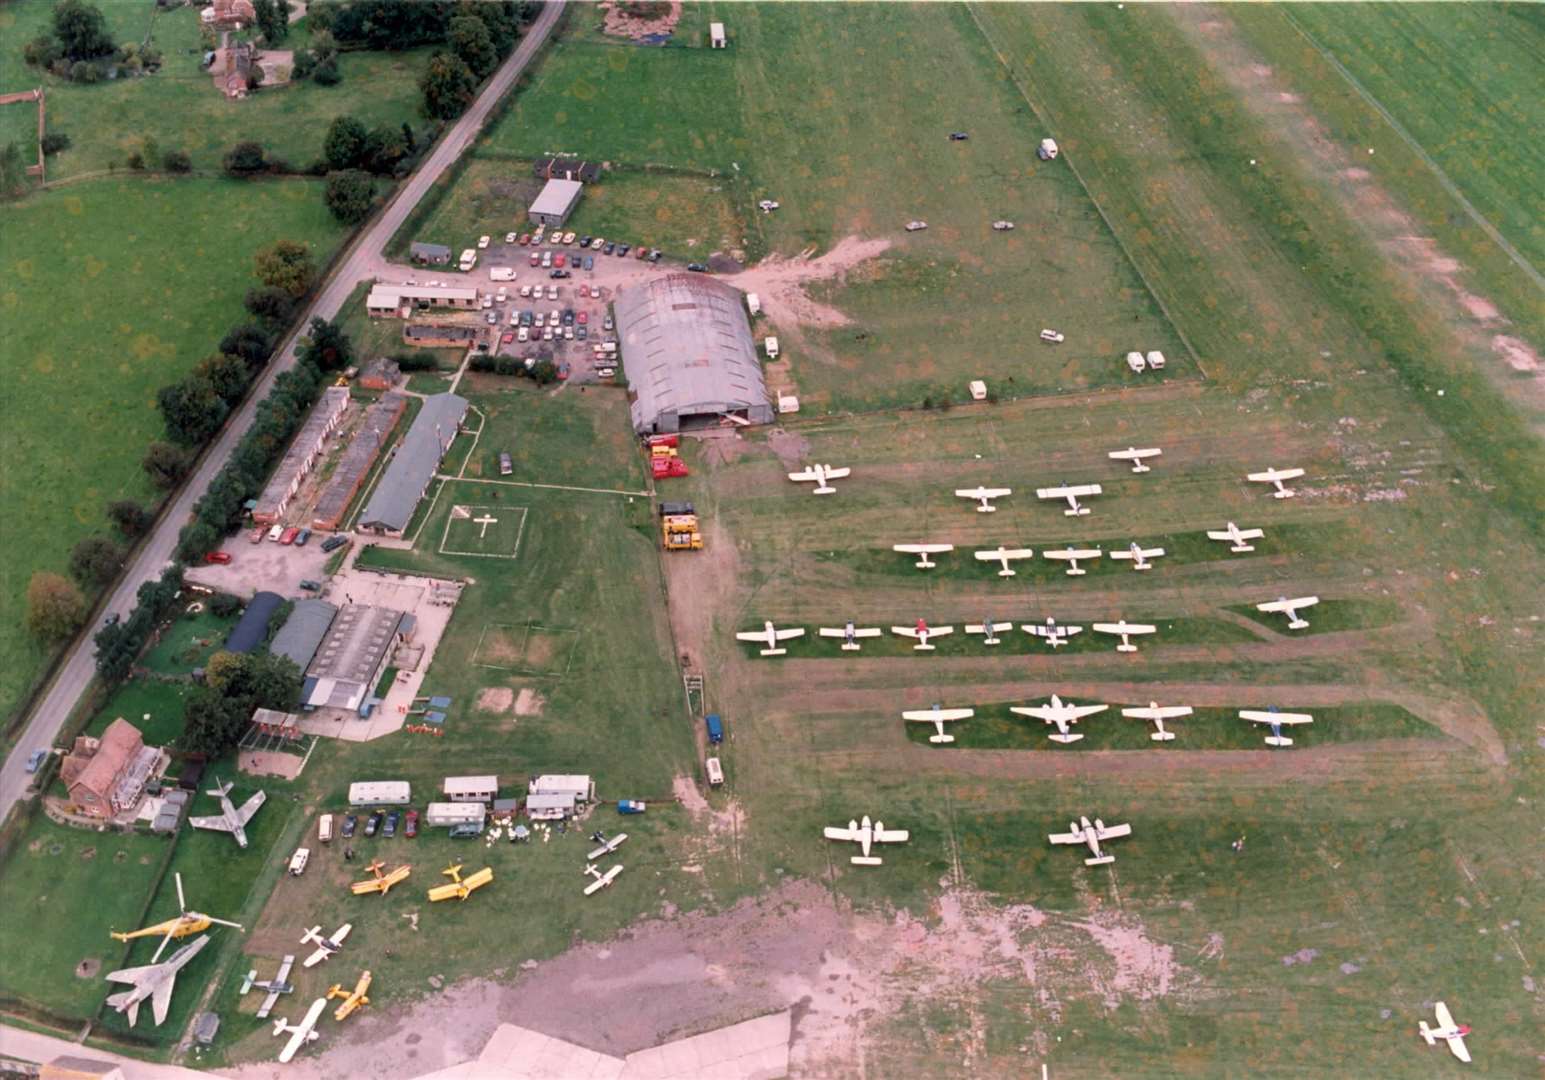 Headcorn airfield, September 1992